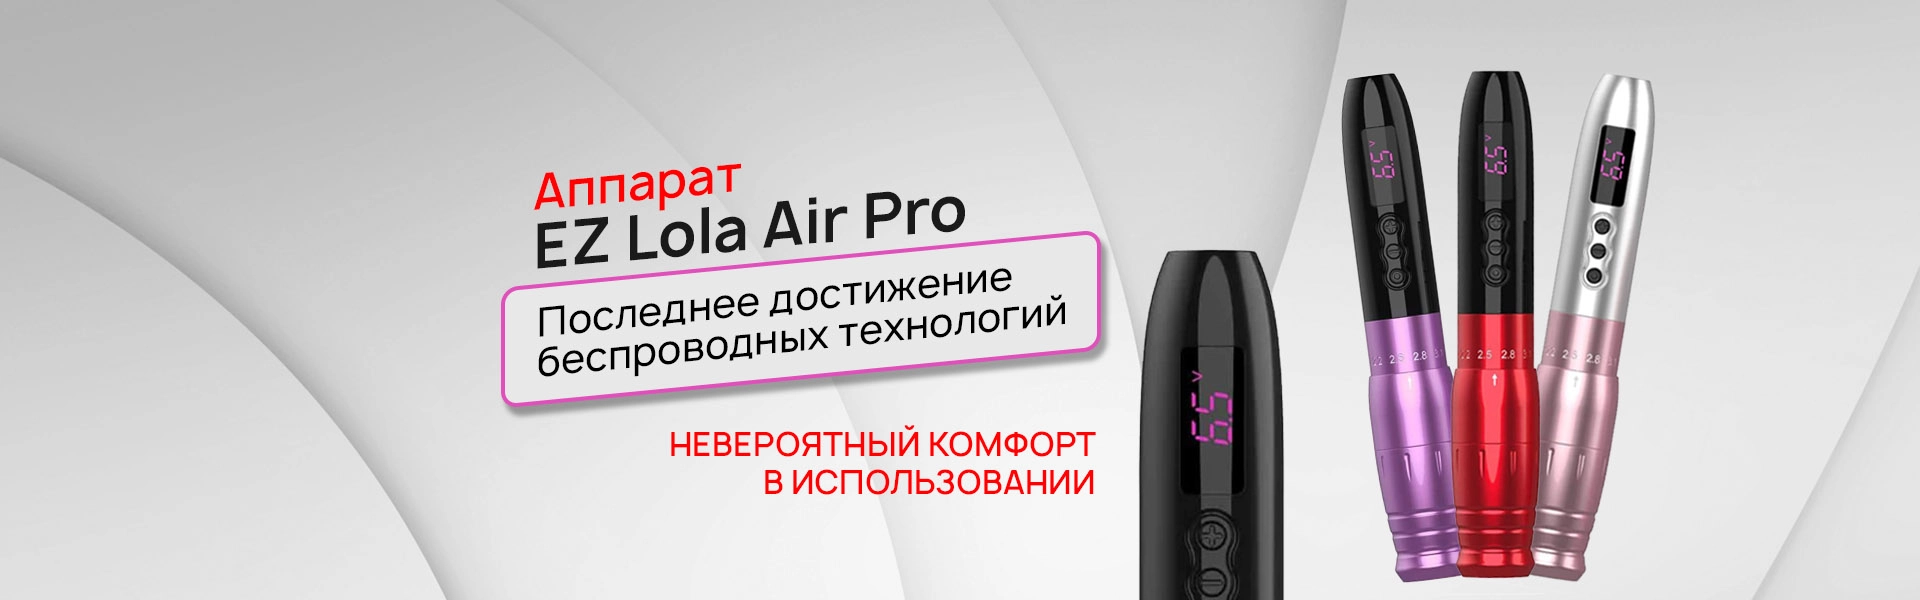 EZ Lola Air Pro